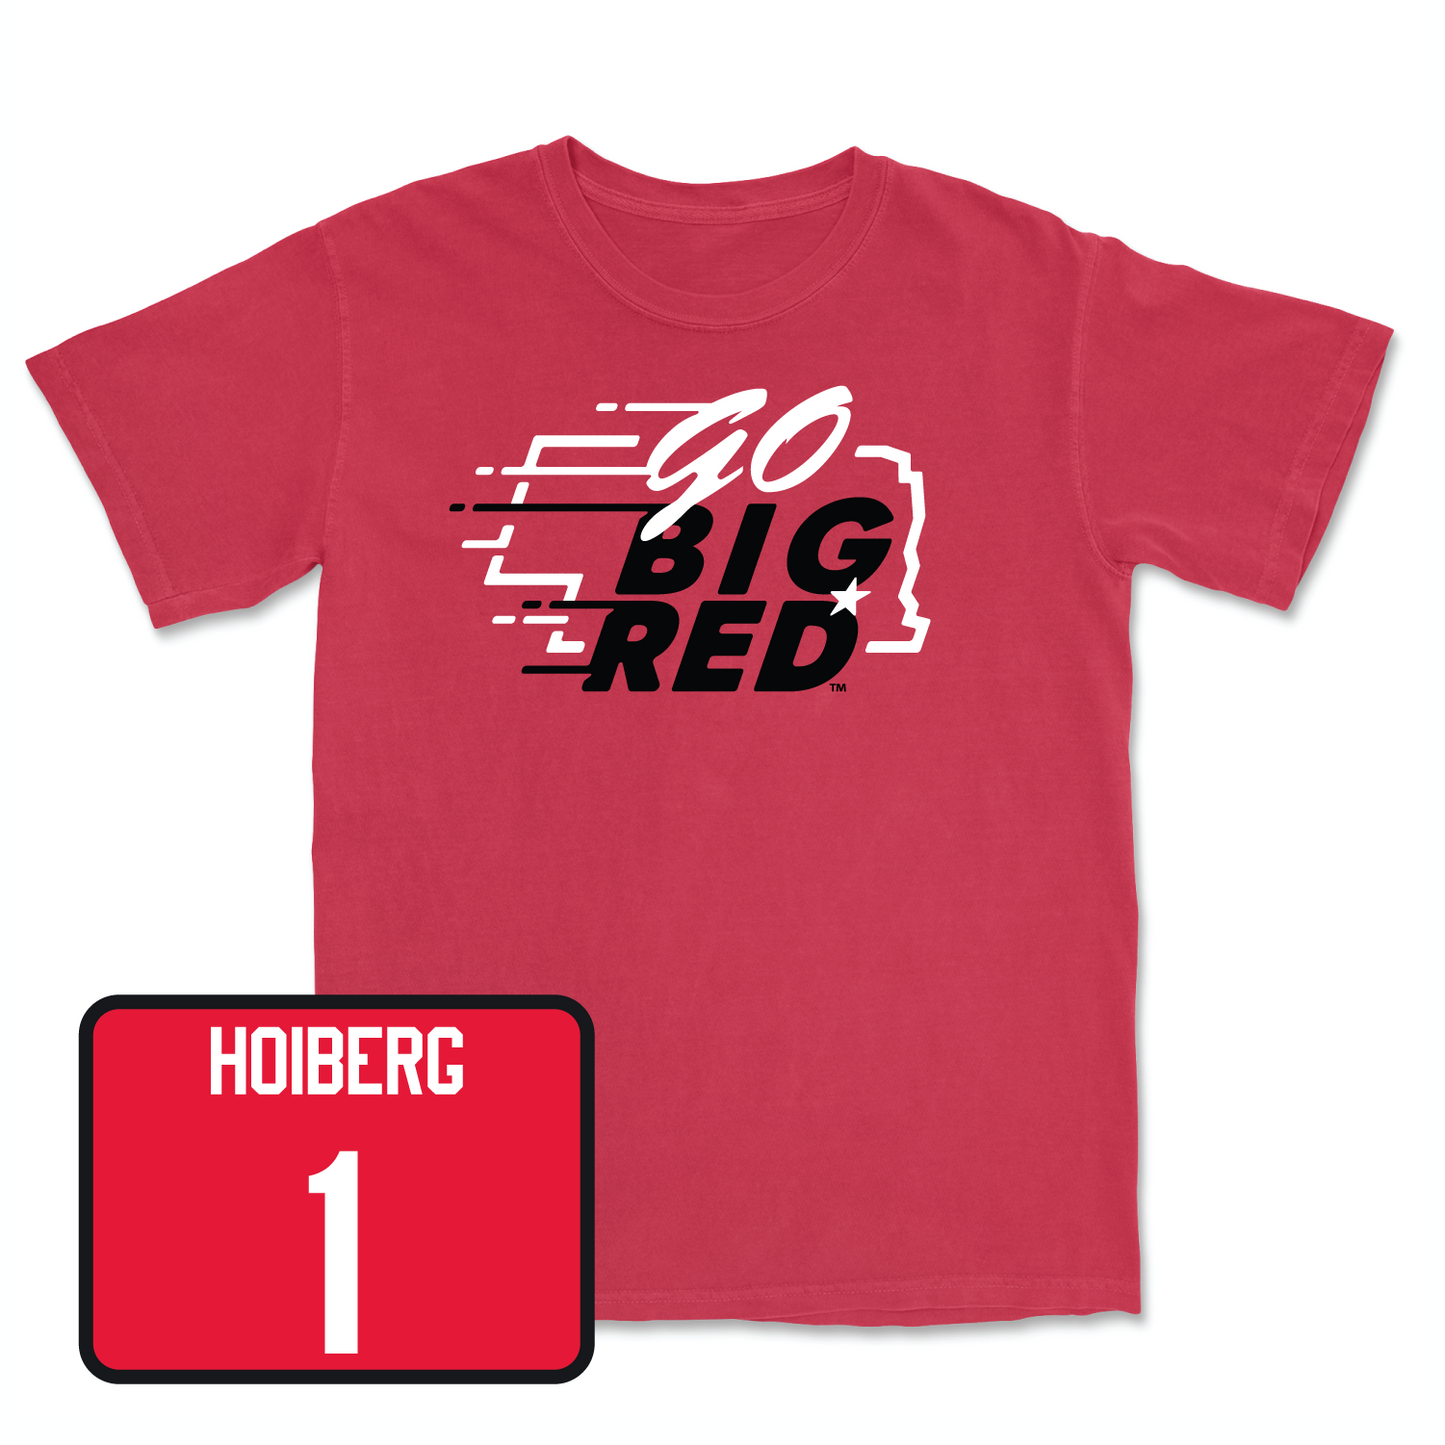 Red Men's Basketball GBR Tee Large / Samuel Hoiberg | #1